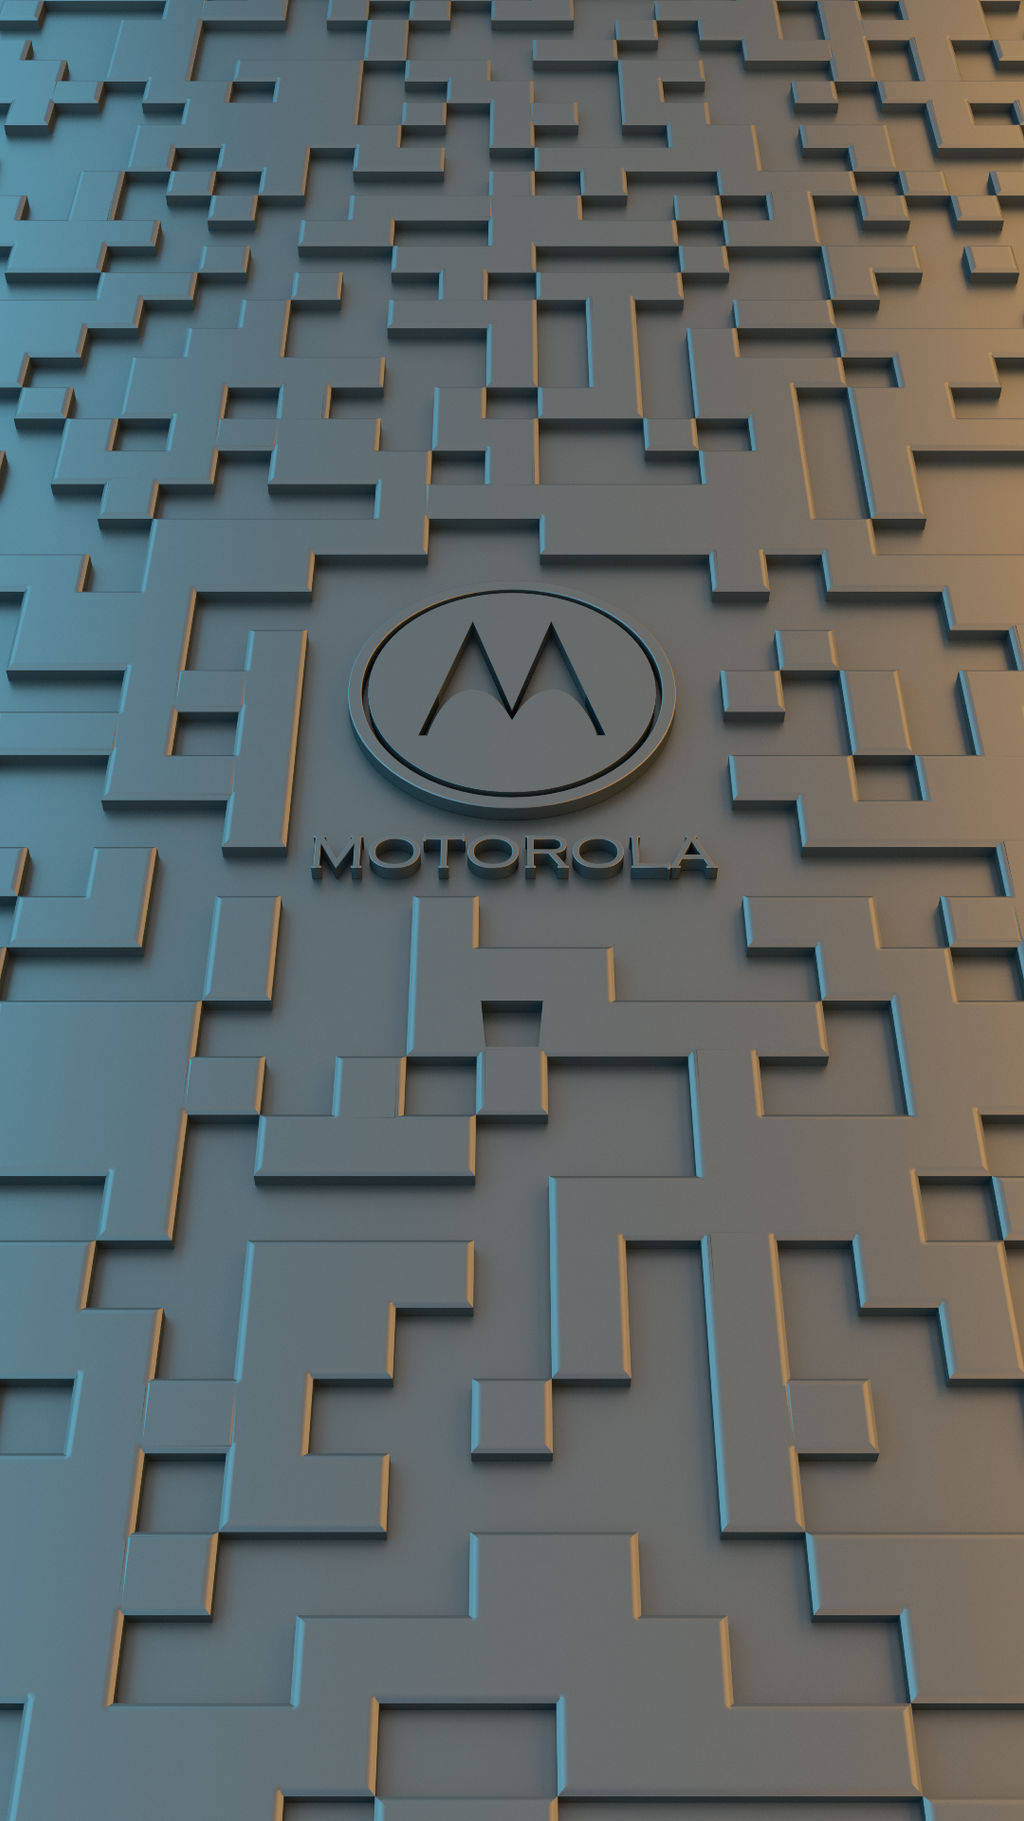 Motorola Labyrint Vägg Wallpaper